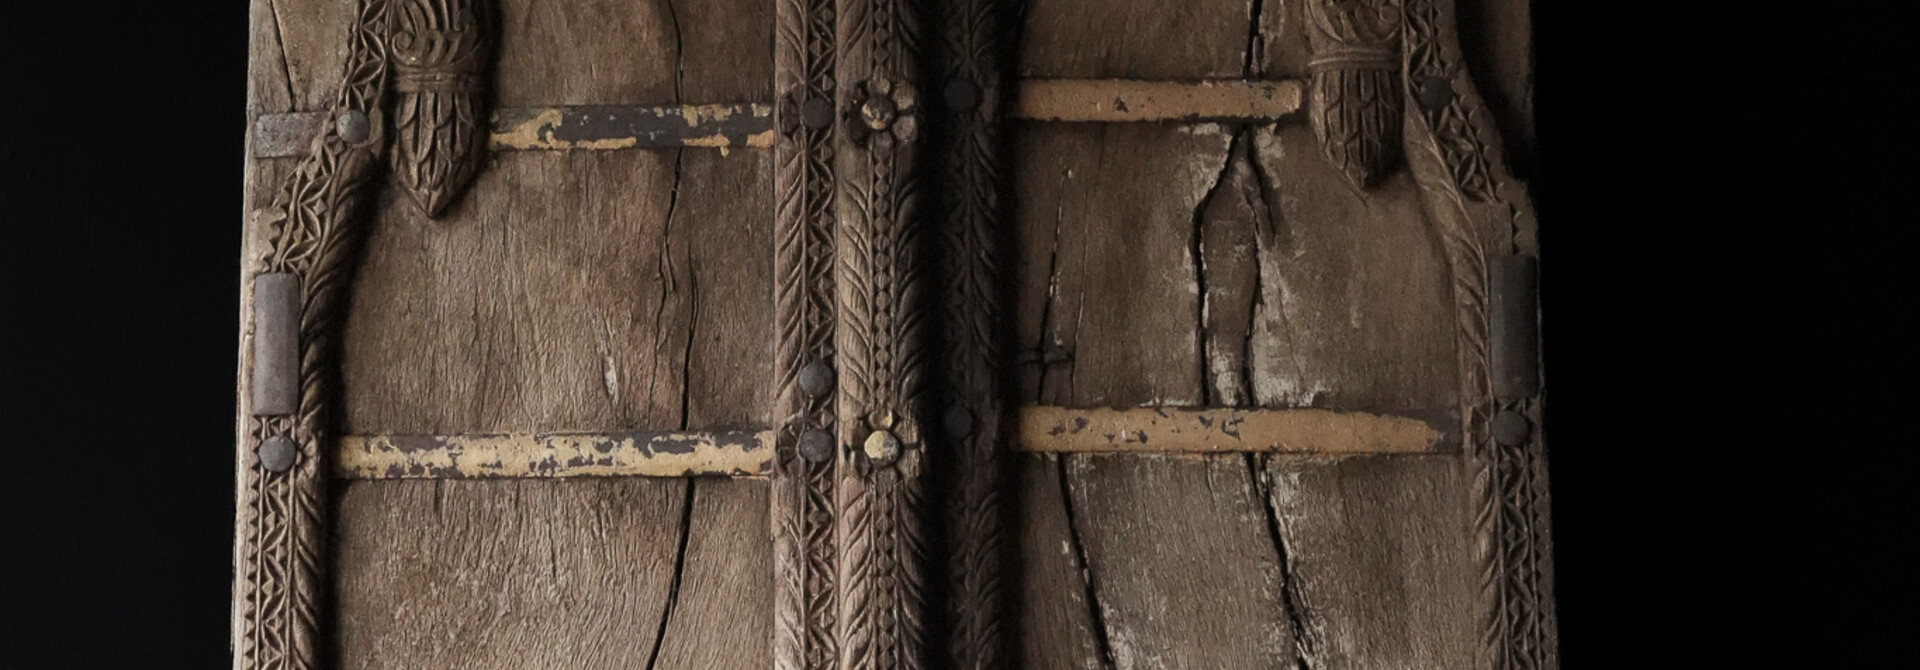 Robuste Holzluke aus einem alten Gebäude in Indien